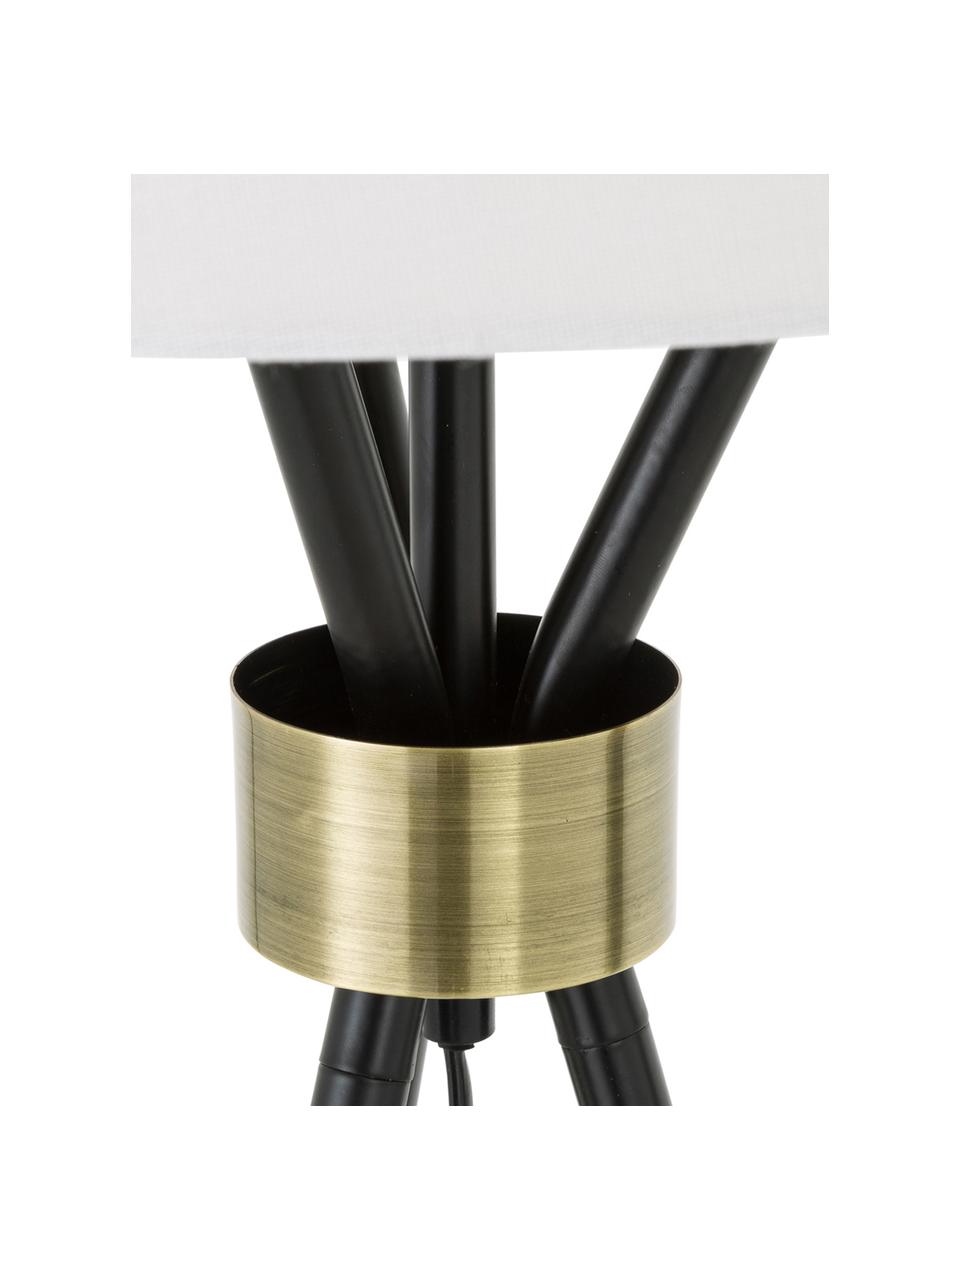 Grande lampada da tavolo treppiede Tribeca, Paralume: lino, Base della lampada: metallo verniciato, Bianco, nero, Ø 40 x Alt. 67 cm